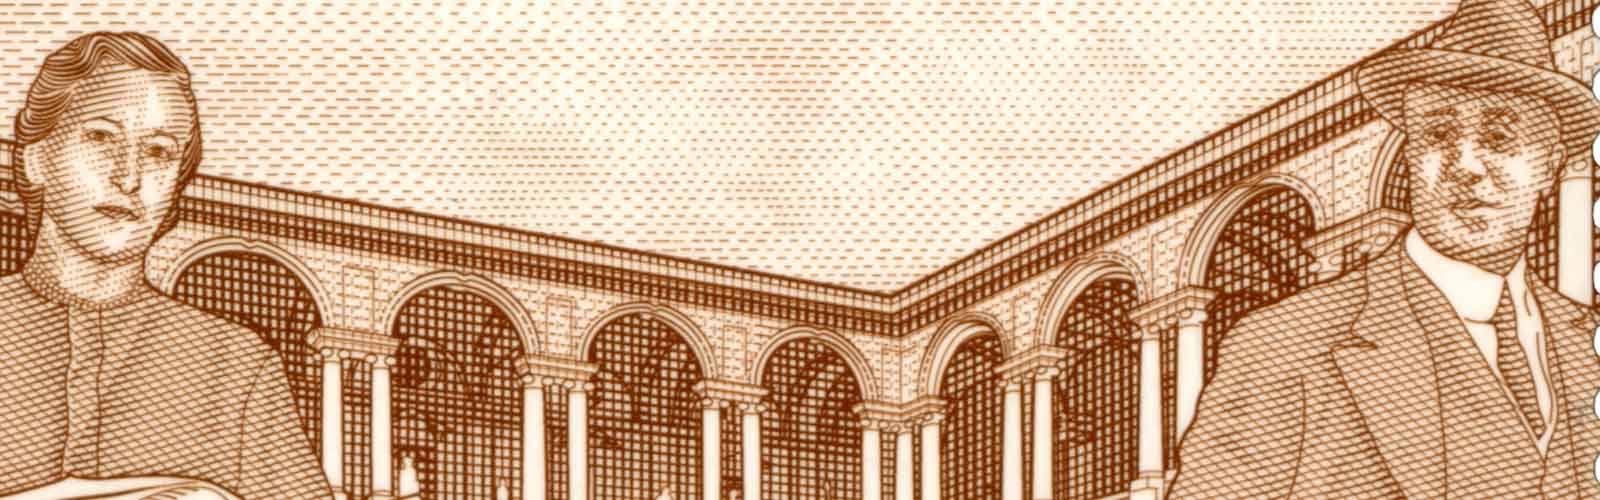 Il francobollo dedicato alla Pinacoteca di Brera